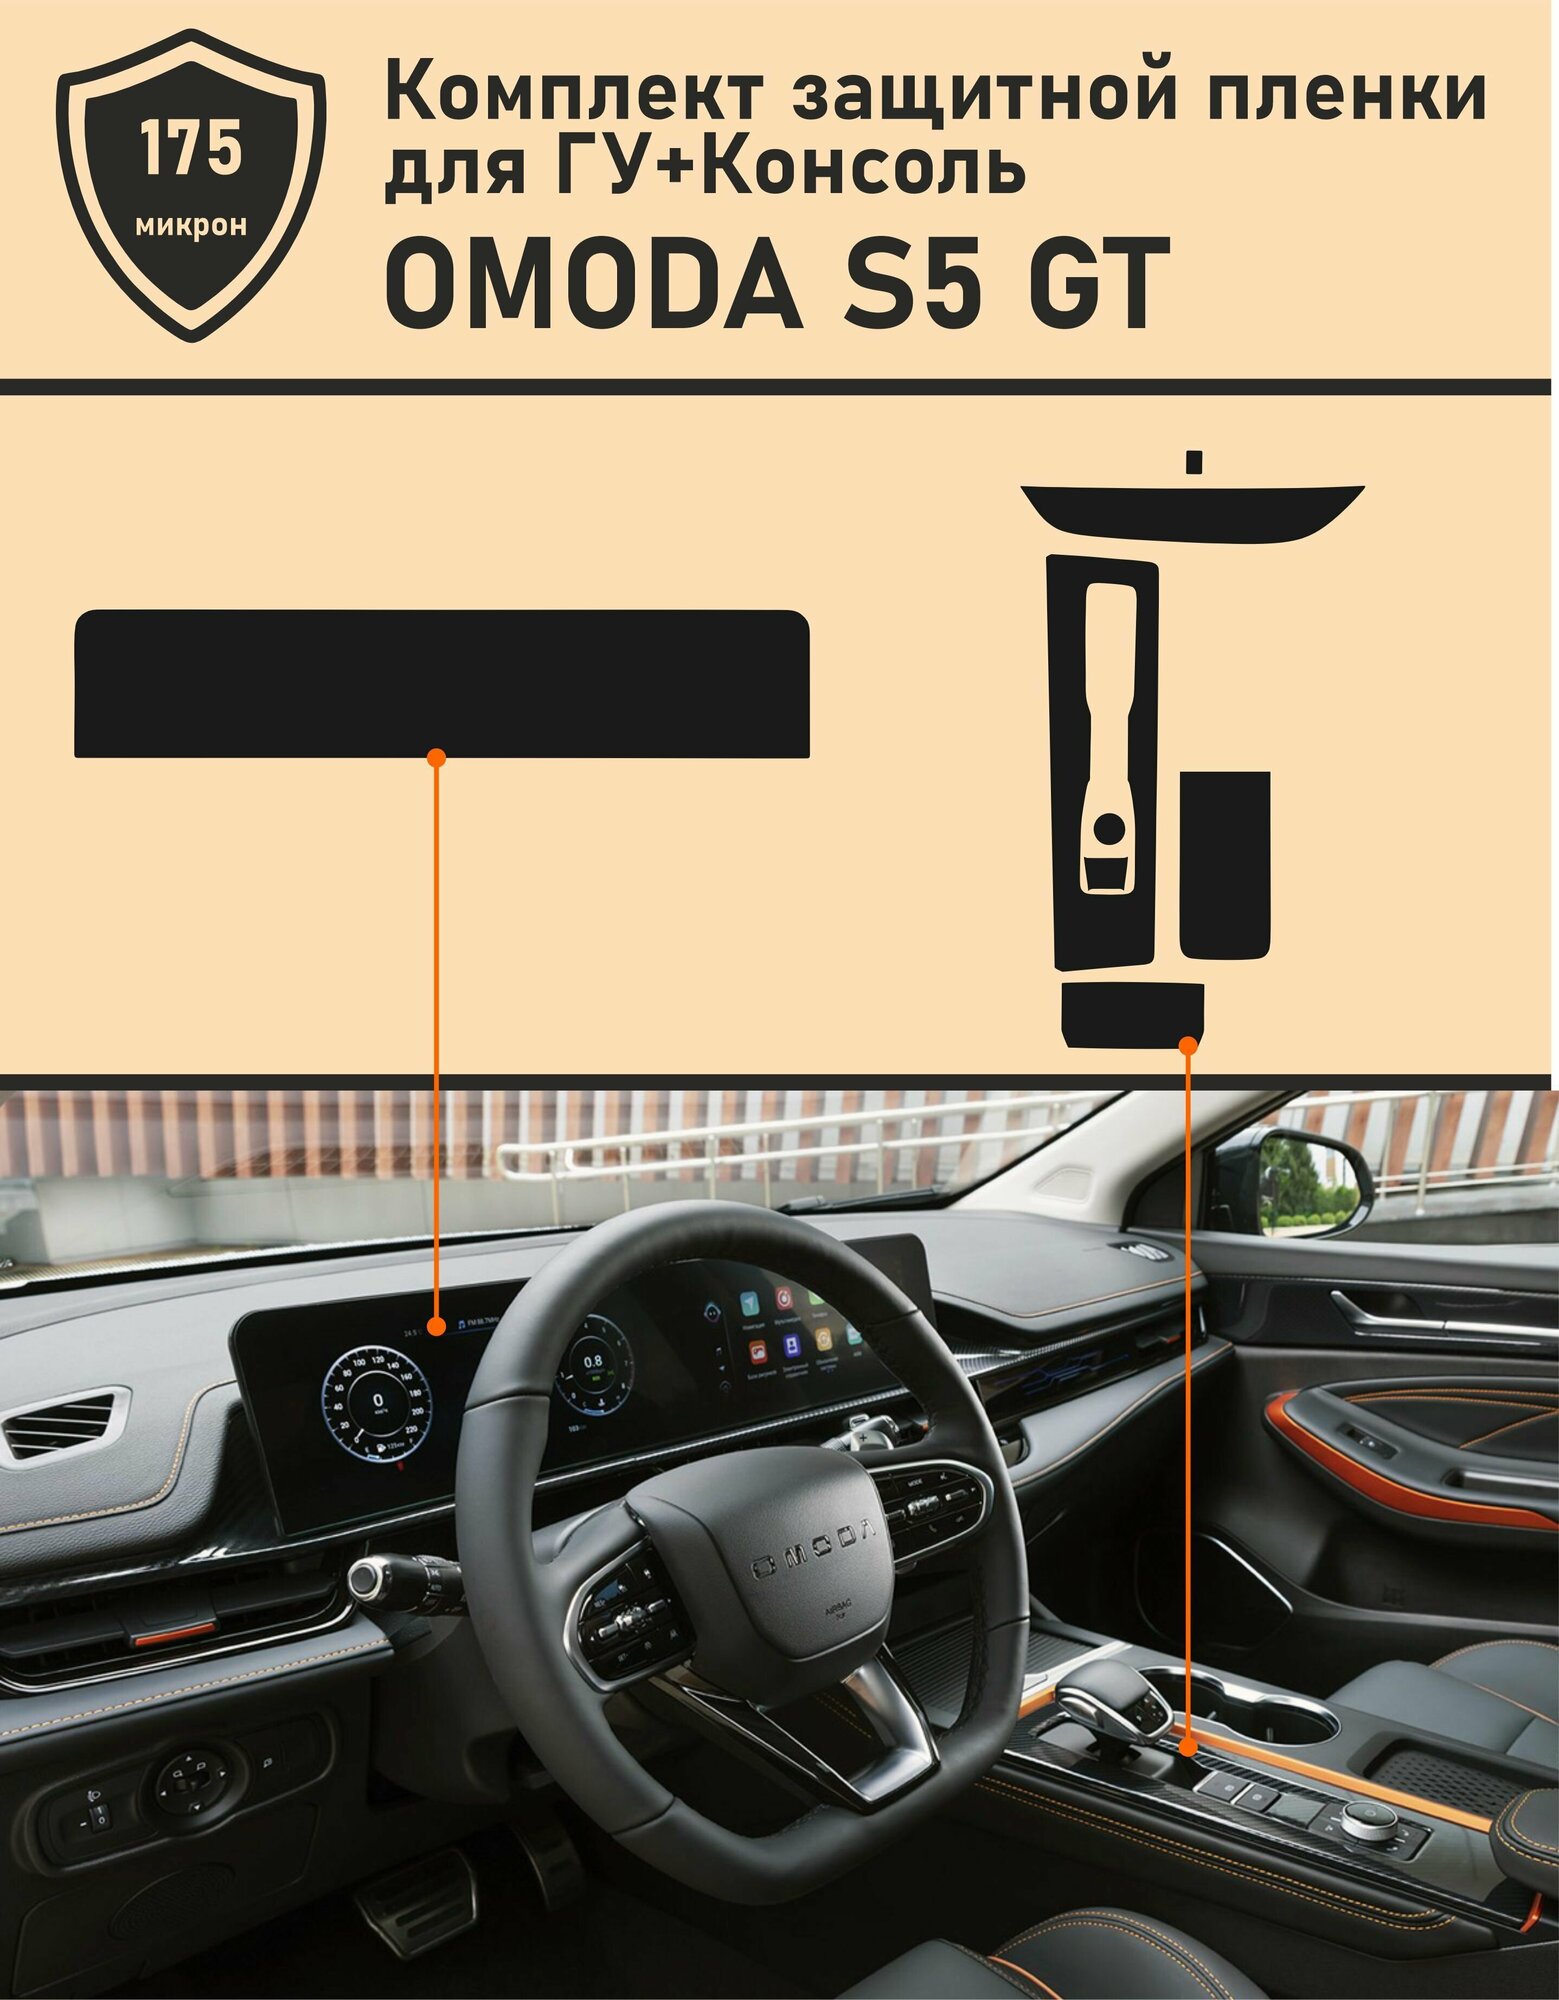 Omoda S5 GT/Комплект защитной пленки ГУ+Консоль